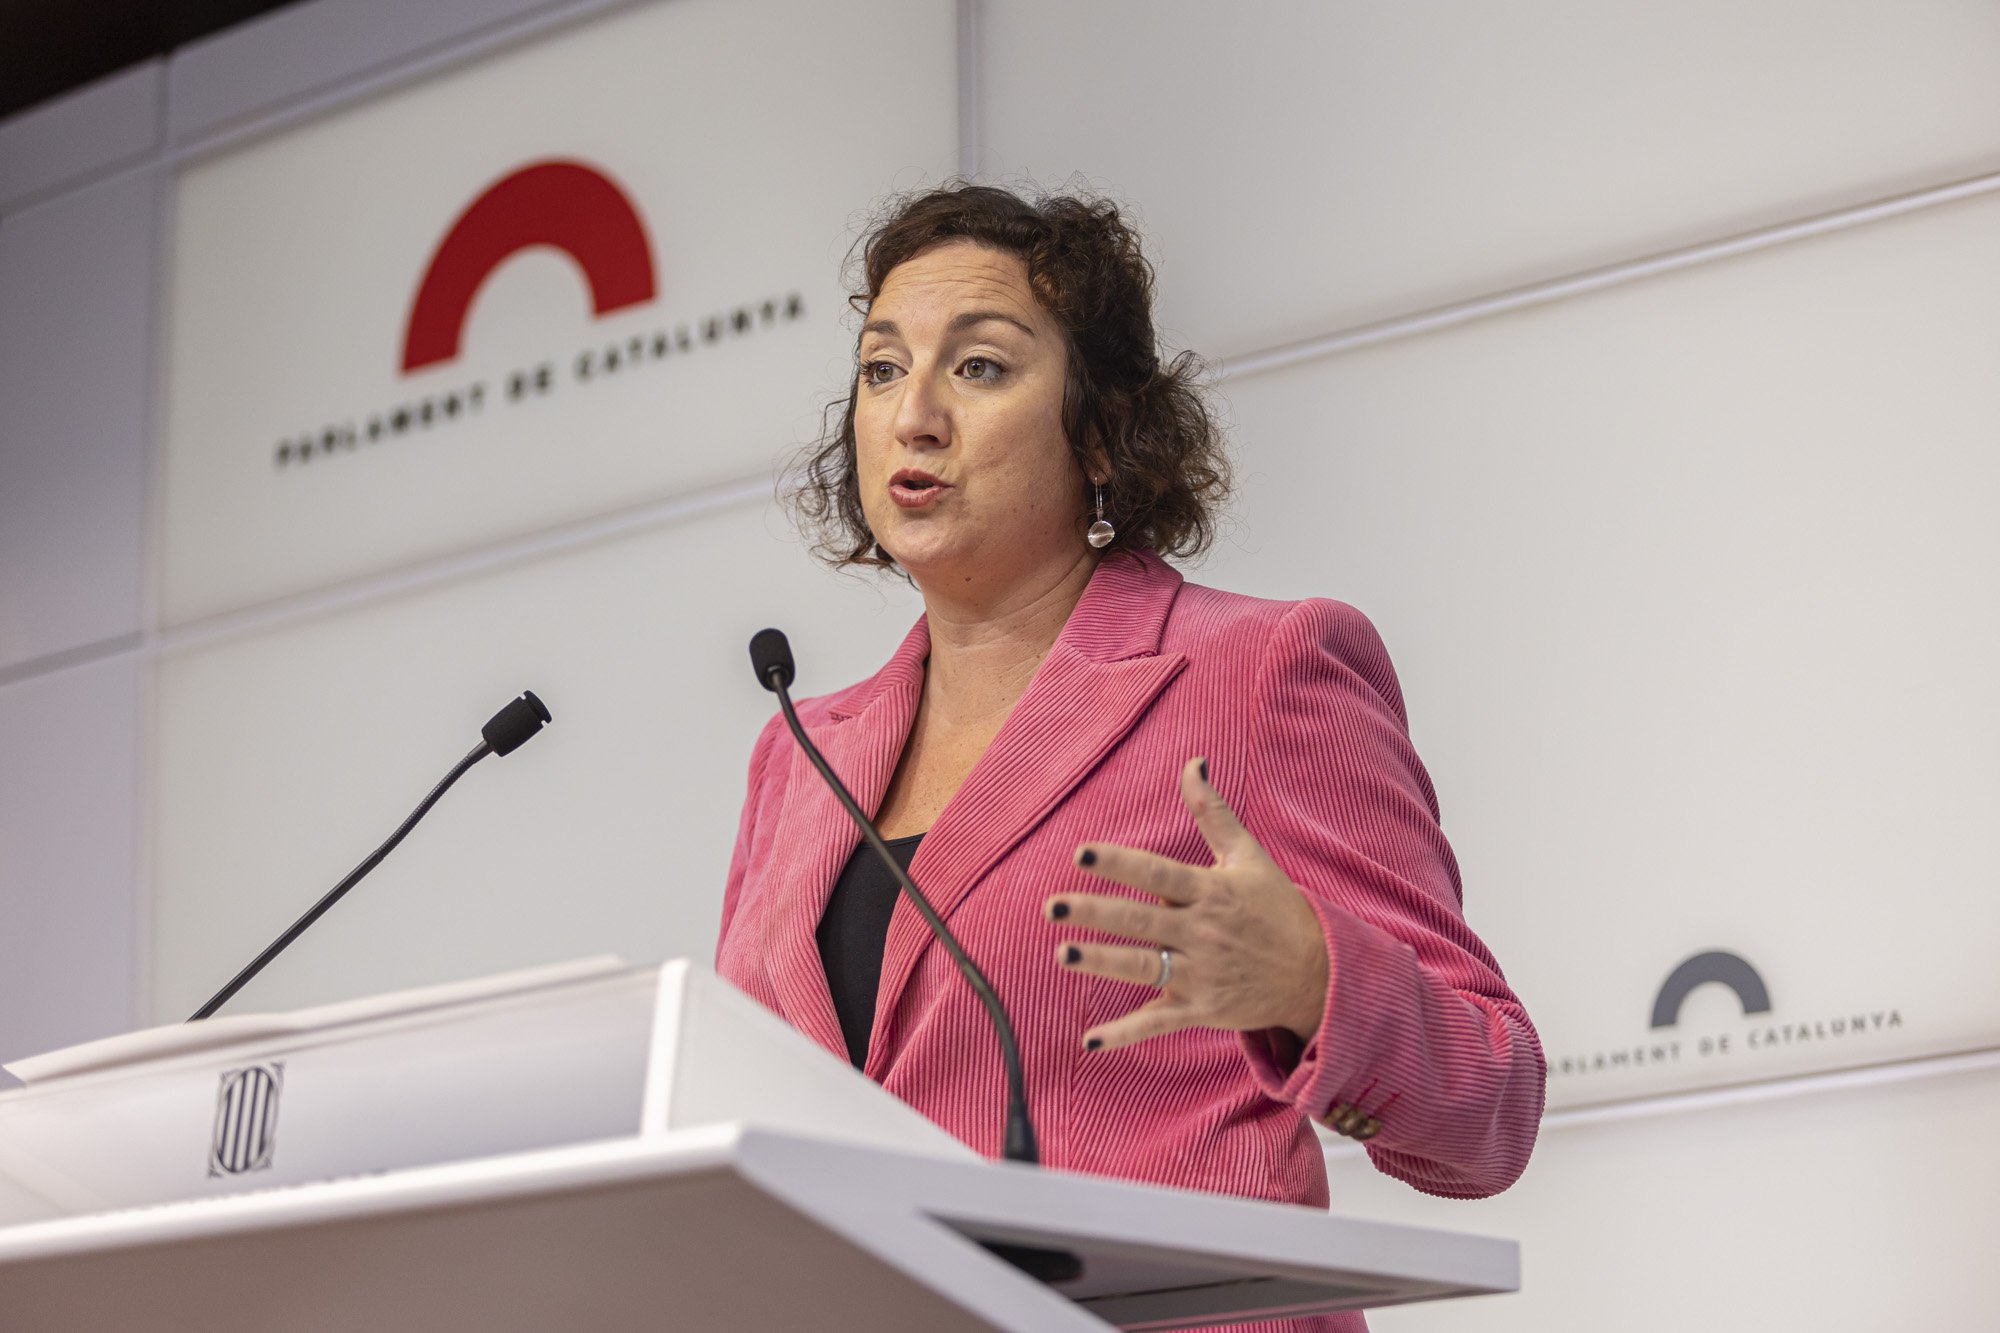 Alícia Romero, sobre ERC: "És un partit al qual li costa dialogar i negociar"